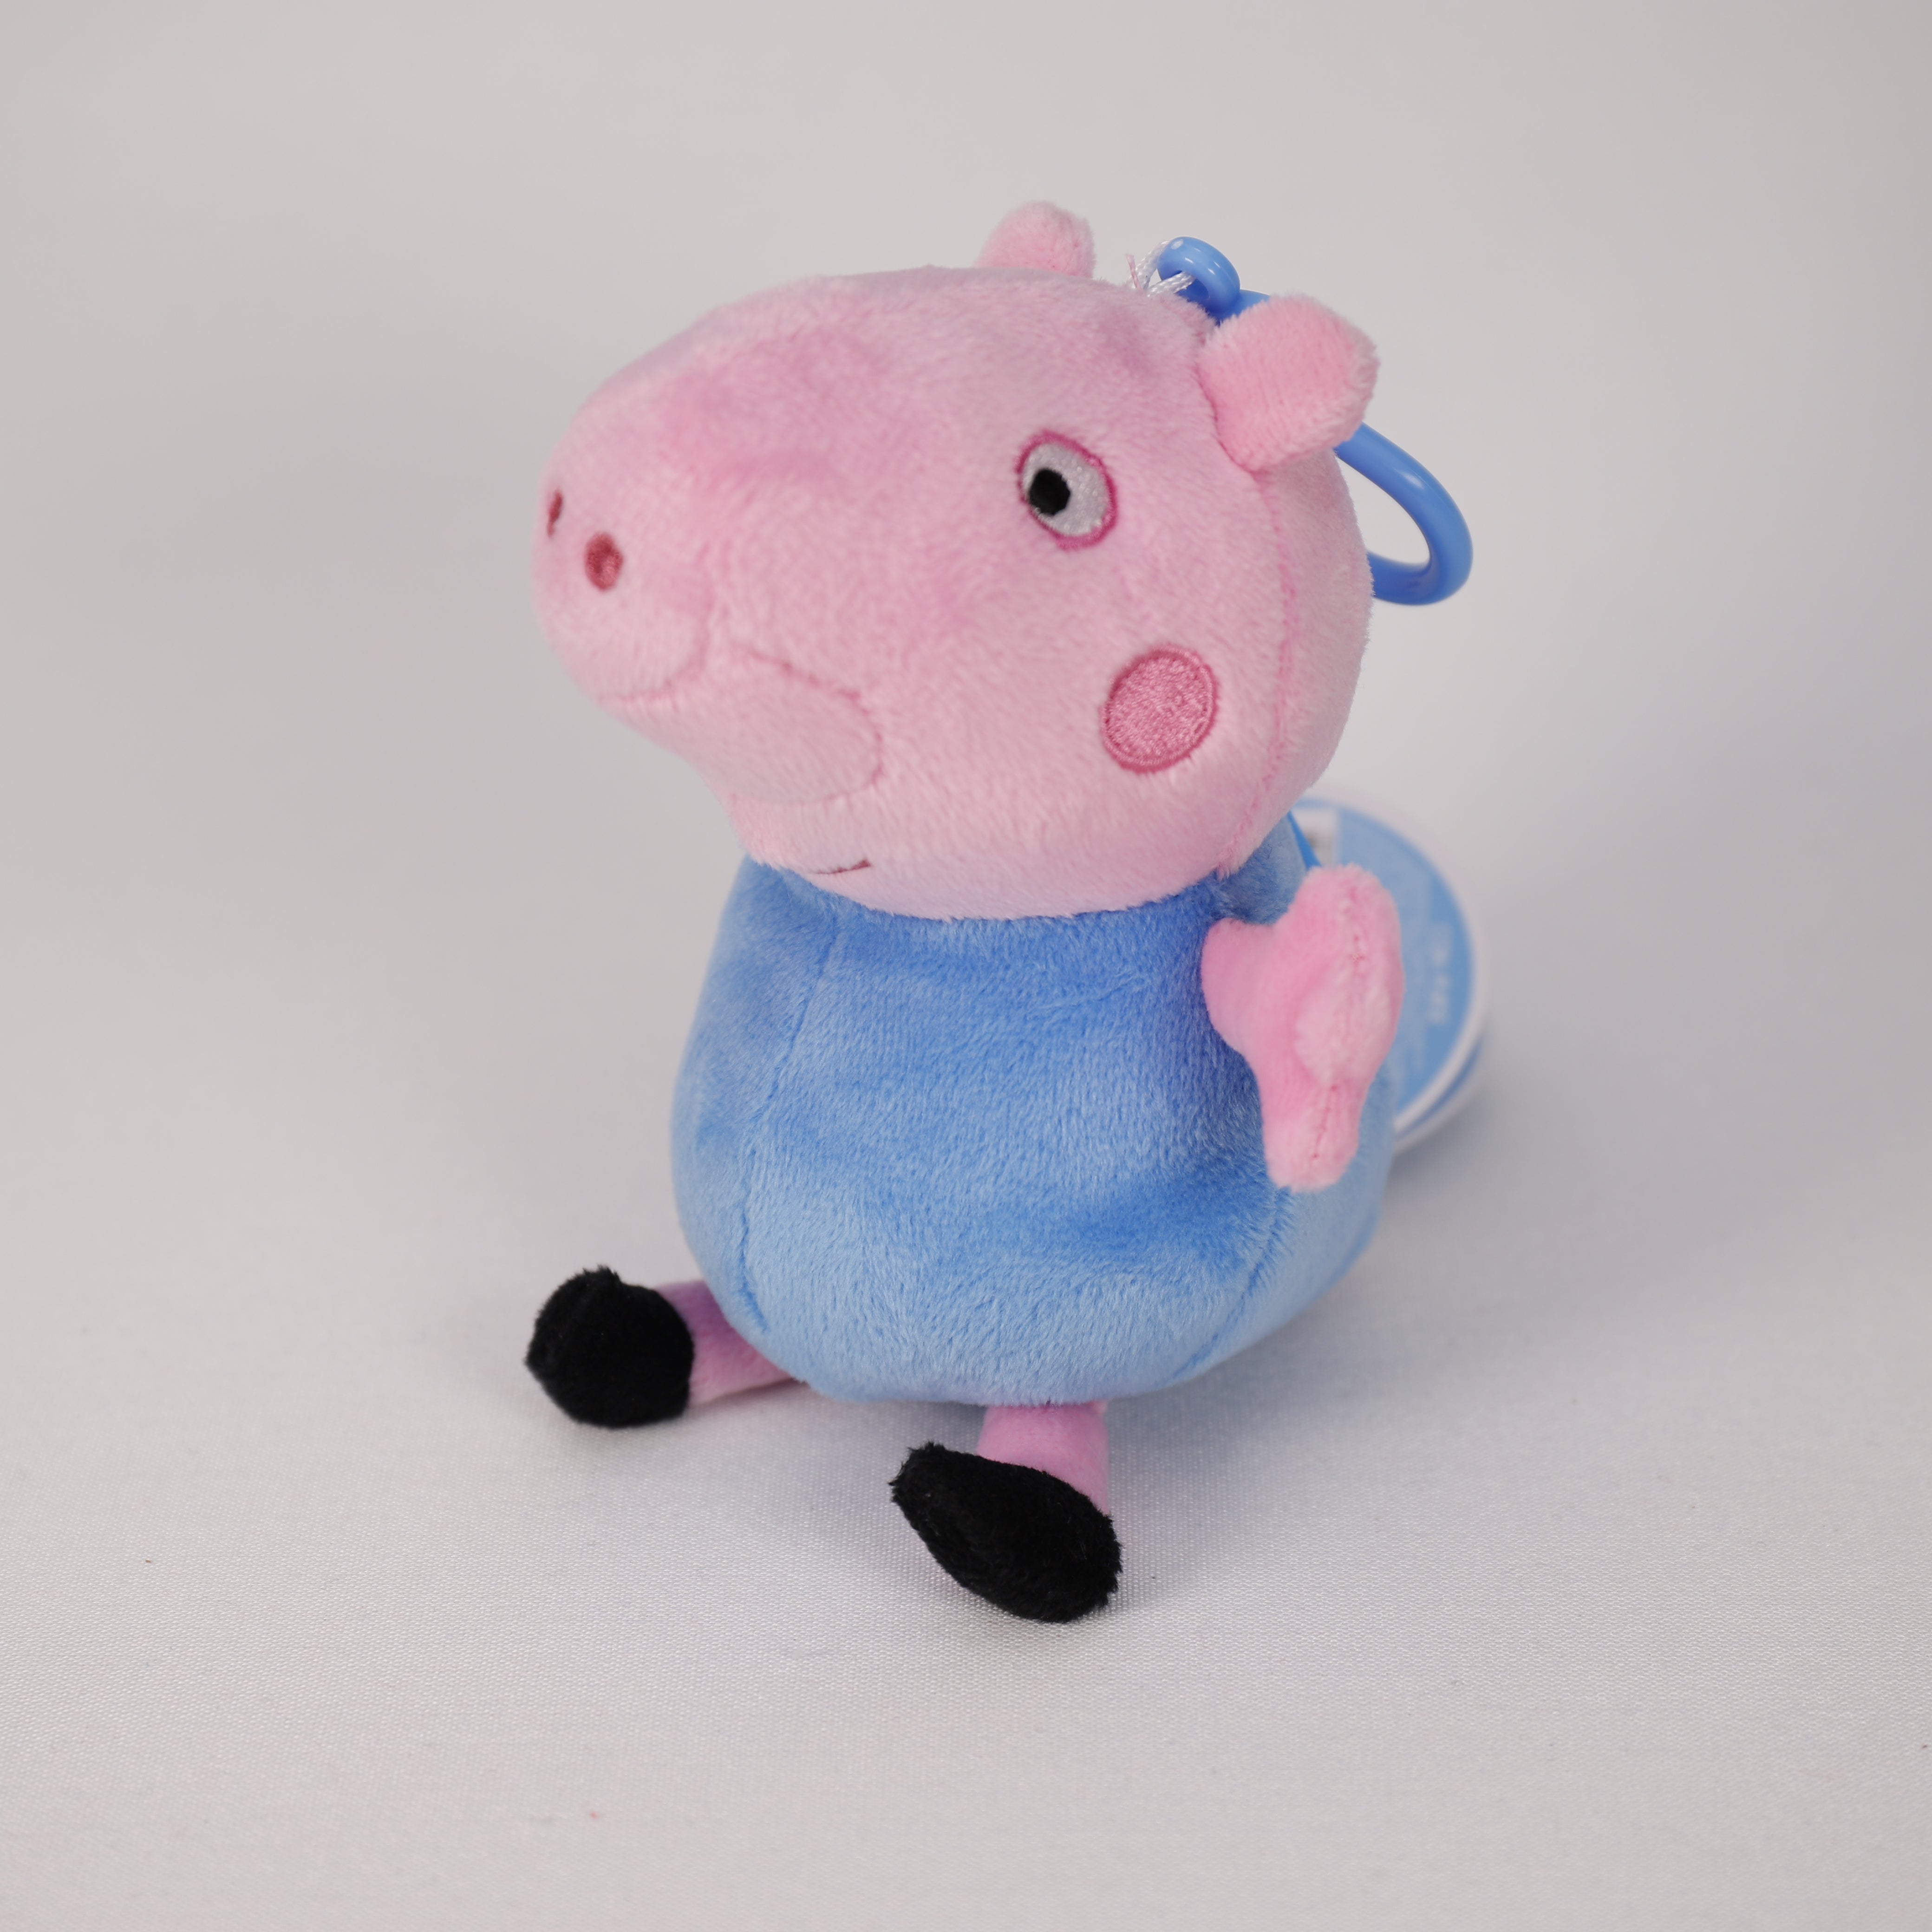 Peppa Pig Plüsch, Sortiert 14 cm, Taschenclip, Geldbörse, Spielzeug, Plüschtier